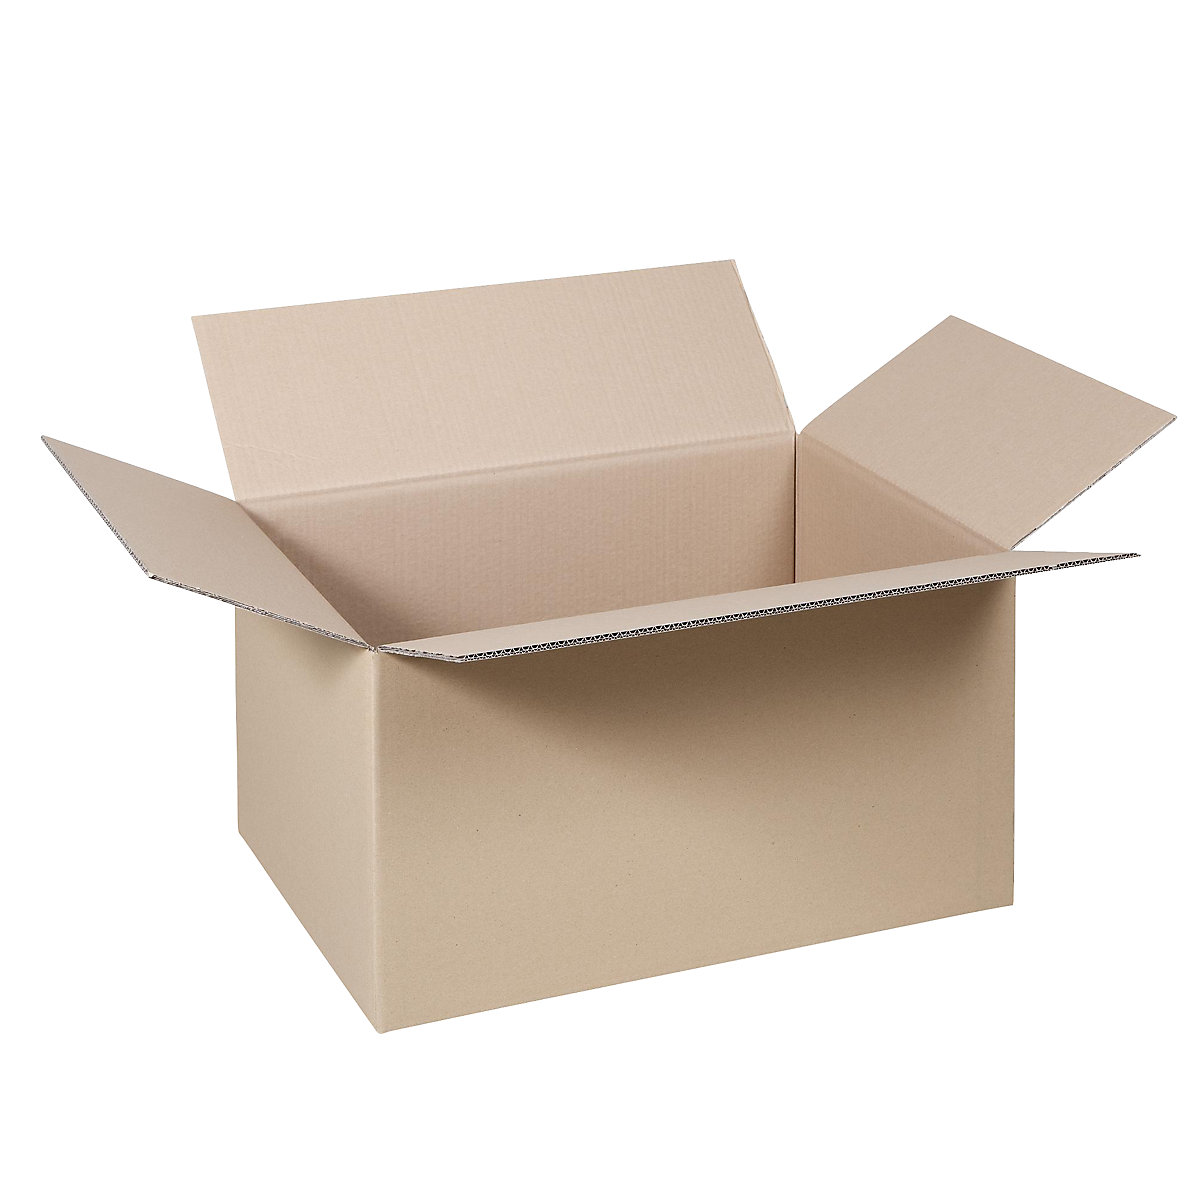 Cutie de carton pliantă, FEFCO 0201, cu 2 straturi de carton ondulat, dimensiuni interioare 400 x 325 x 273 mm, amb. 50 buc.-35